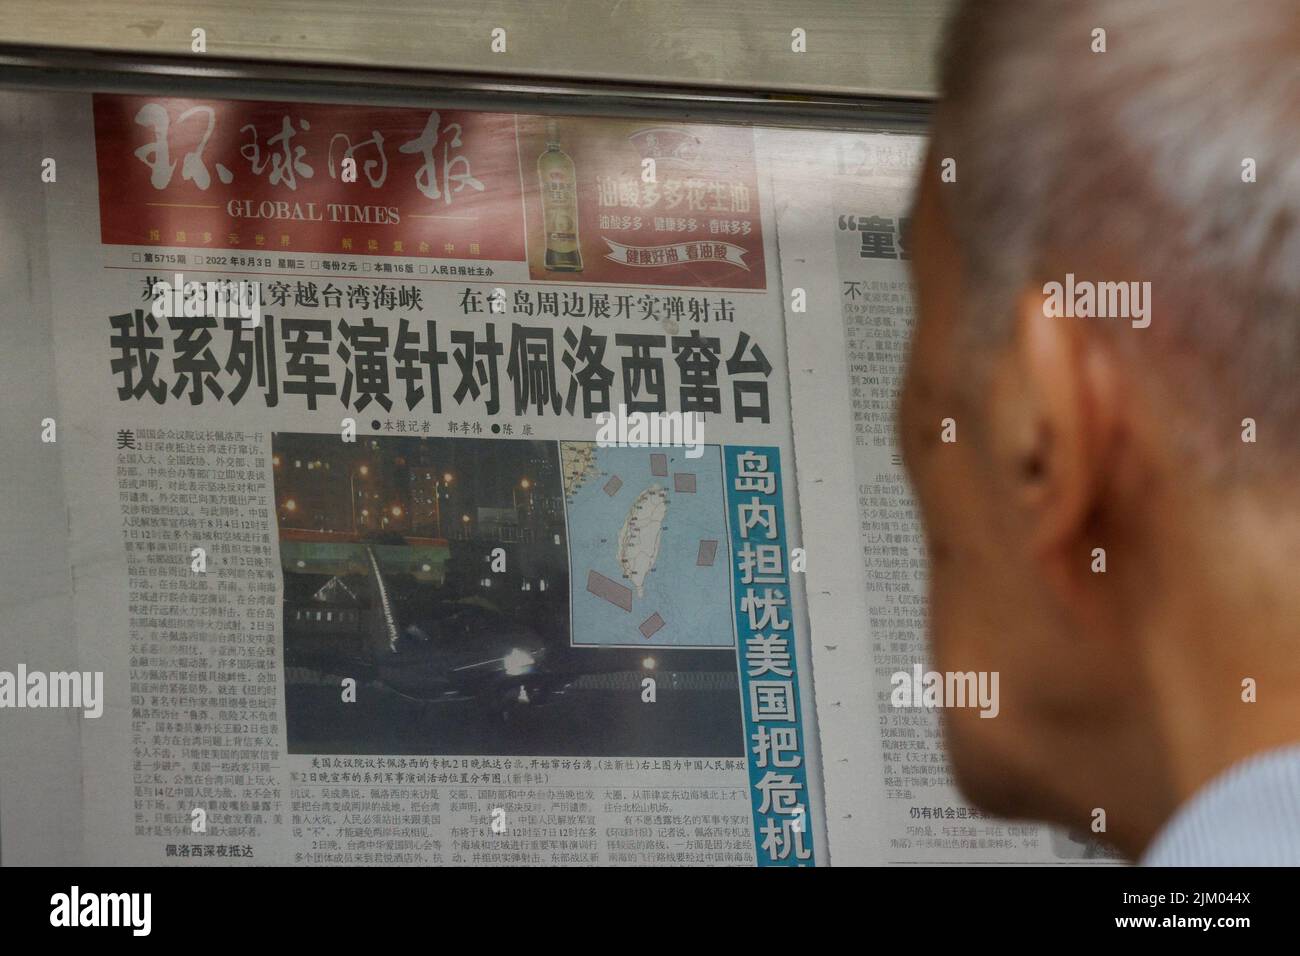 Un homme lit un article du Global Times sur les exercices militaires de l'Armée populaire de libération chinoise (ALP) à la suite de la visite du Président de la Chambre des représentants des États-Unis Nancy Pelosi à Taïwan, dans un kiosque à Pékin, en Chine, au 4 août 2022. REUTERS/Thomas Peter Banque D'Images